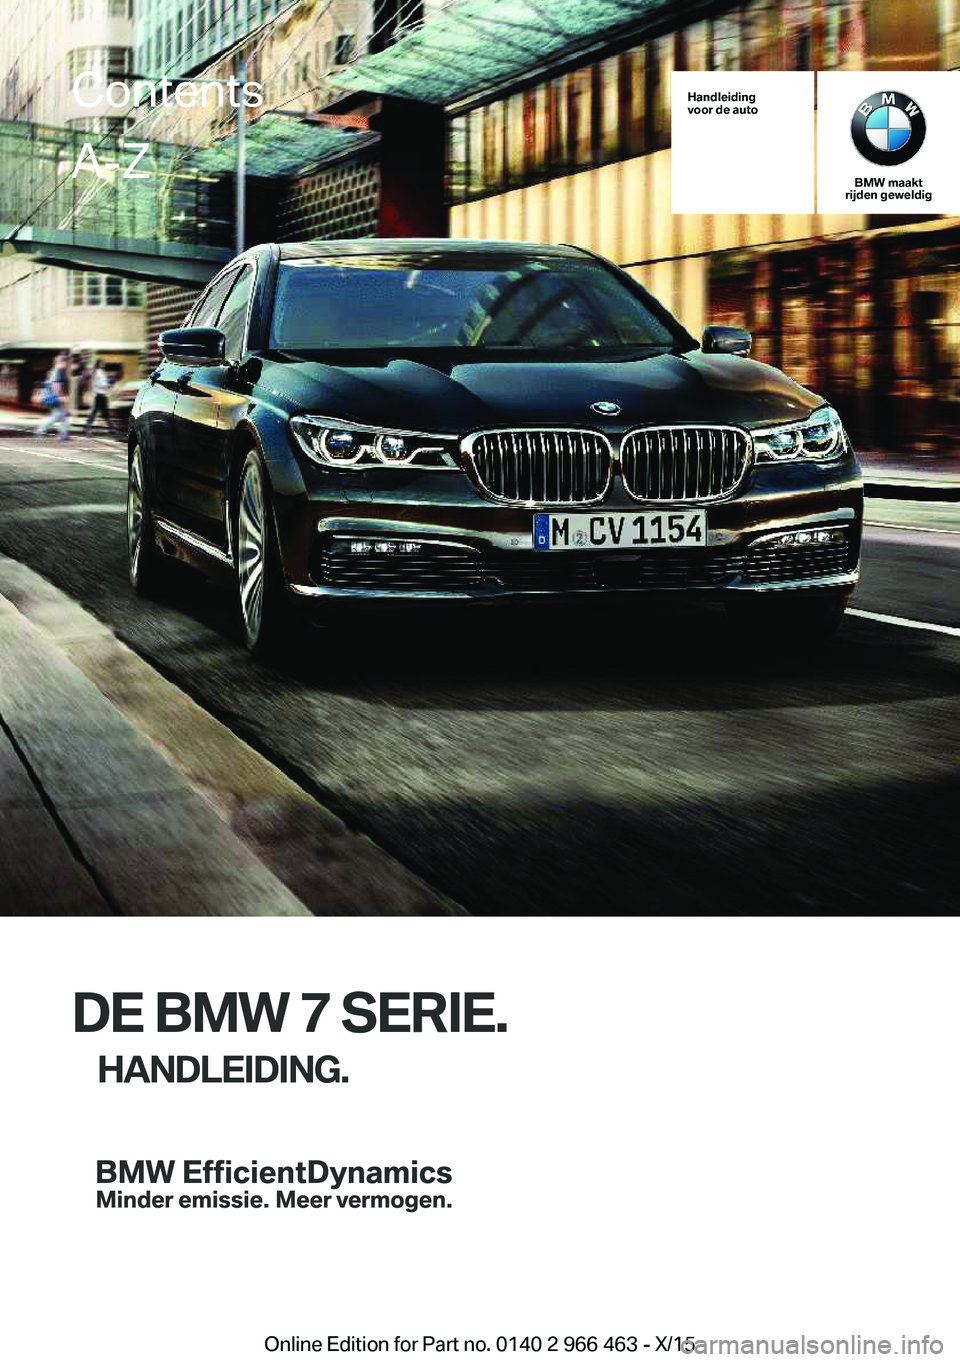 BMW 7 SERIES 2016  Instructieboekjes (in Dutch) Handleiding
voor de auto
BMW maakt
rijden geweldig
DE BMW 7 SERIE.
HANDLEIDING.
ContentsA-Z
Online Edition for Part no. 0140 2 966 463 - X/15   